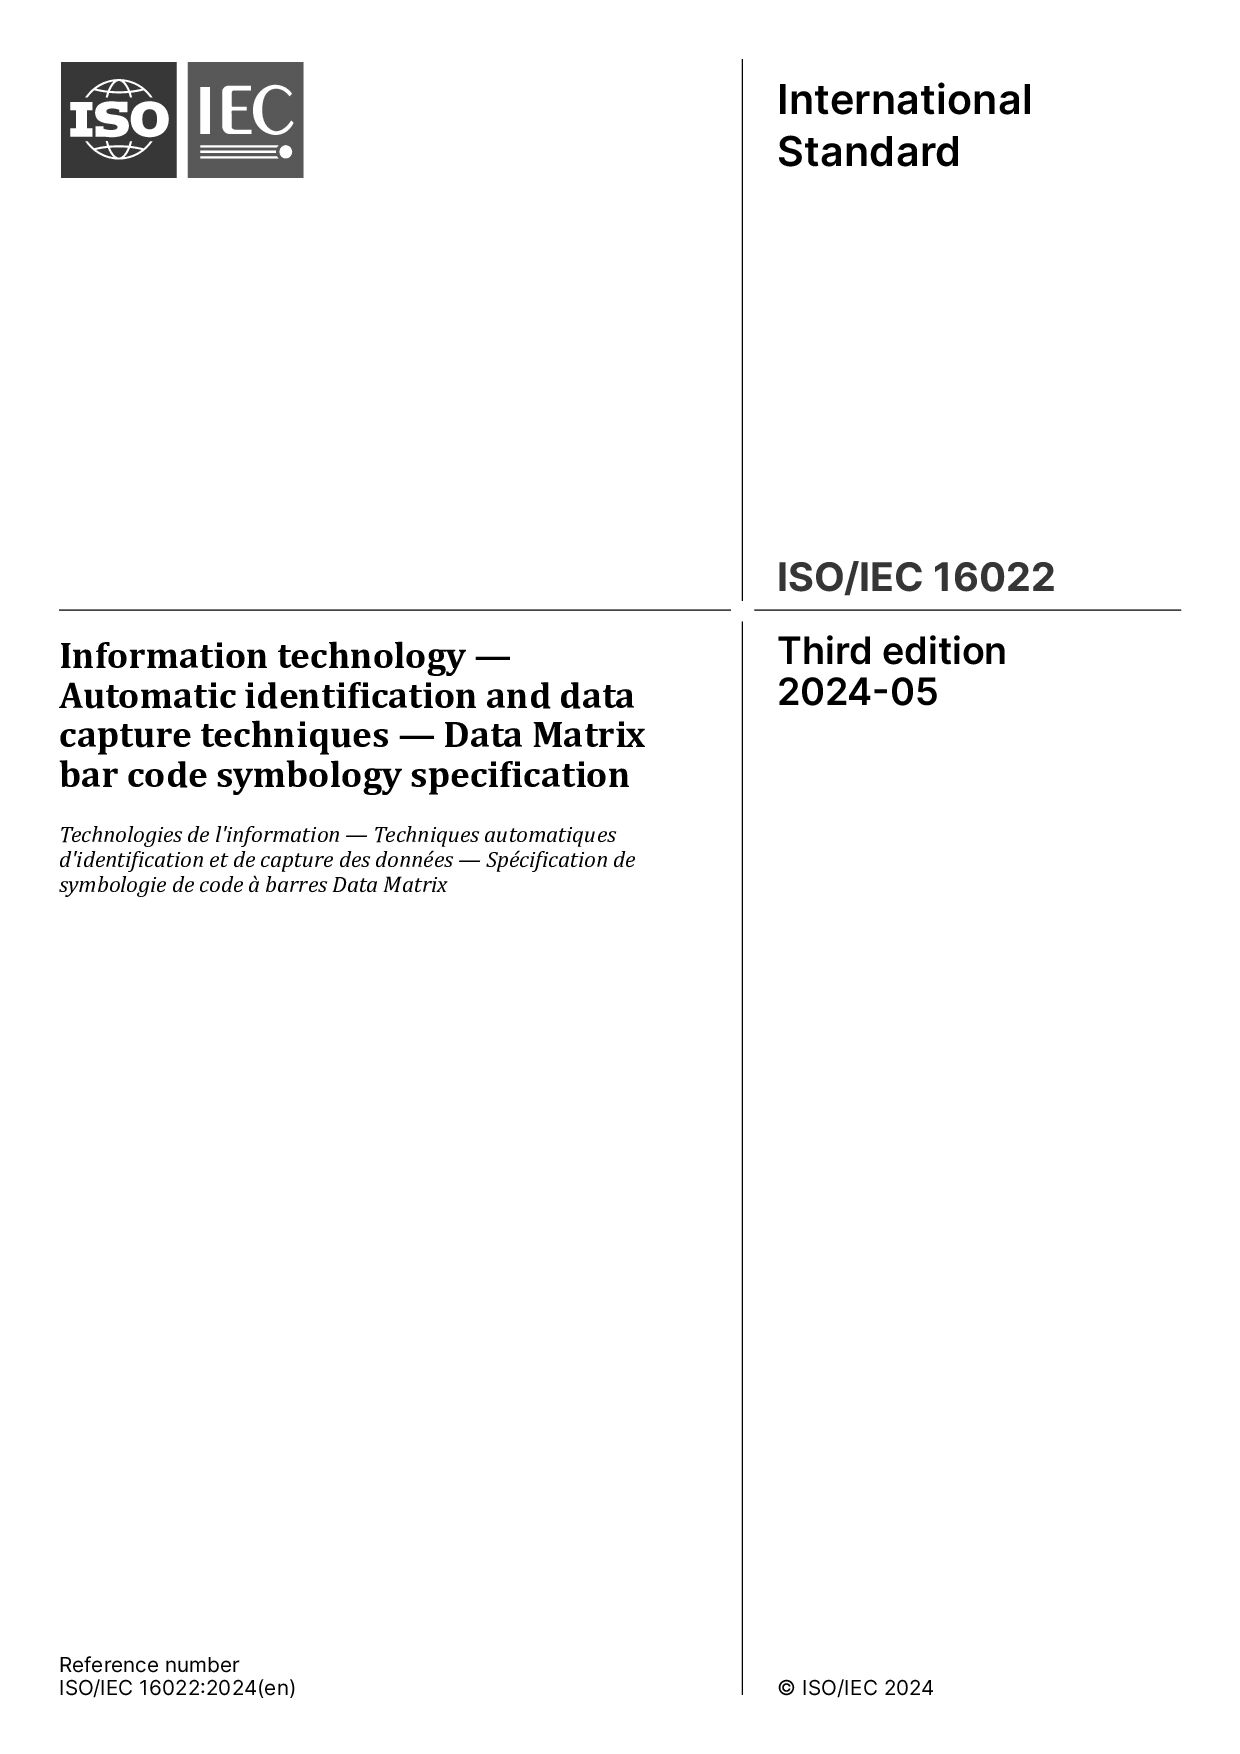 ISO/IEC 16022:2024封面图